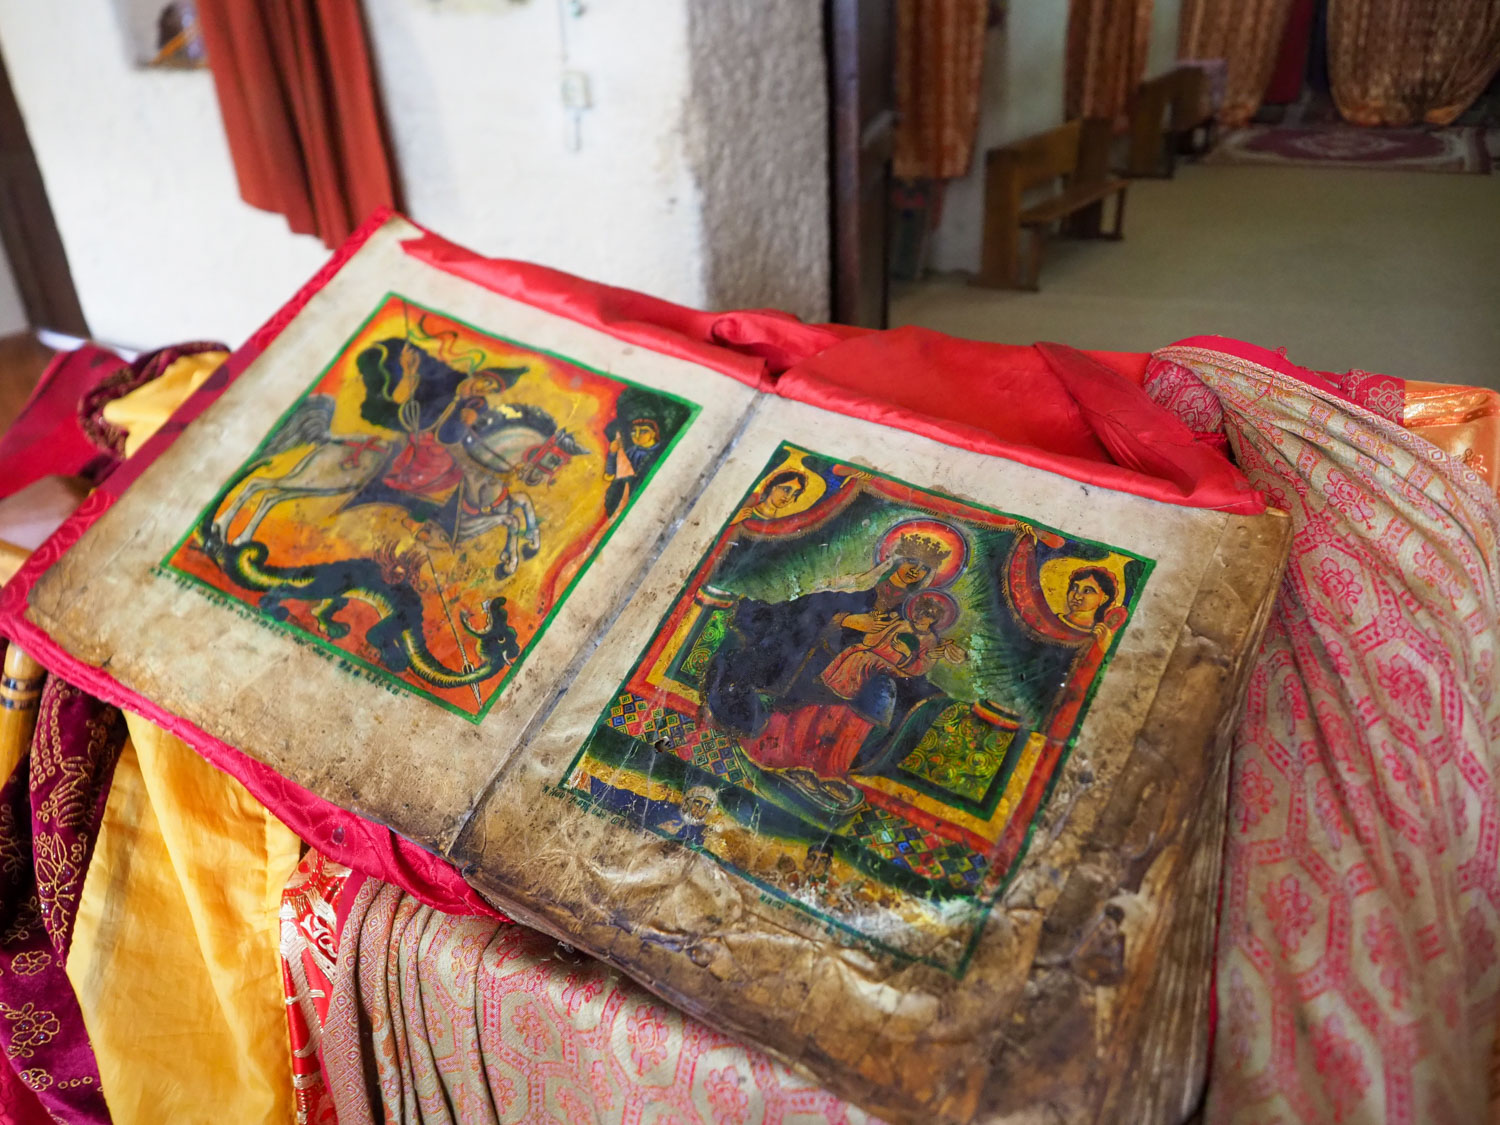 旧・聖マリア教会の羊皮紙の書物。600年ころのものとされています。